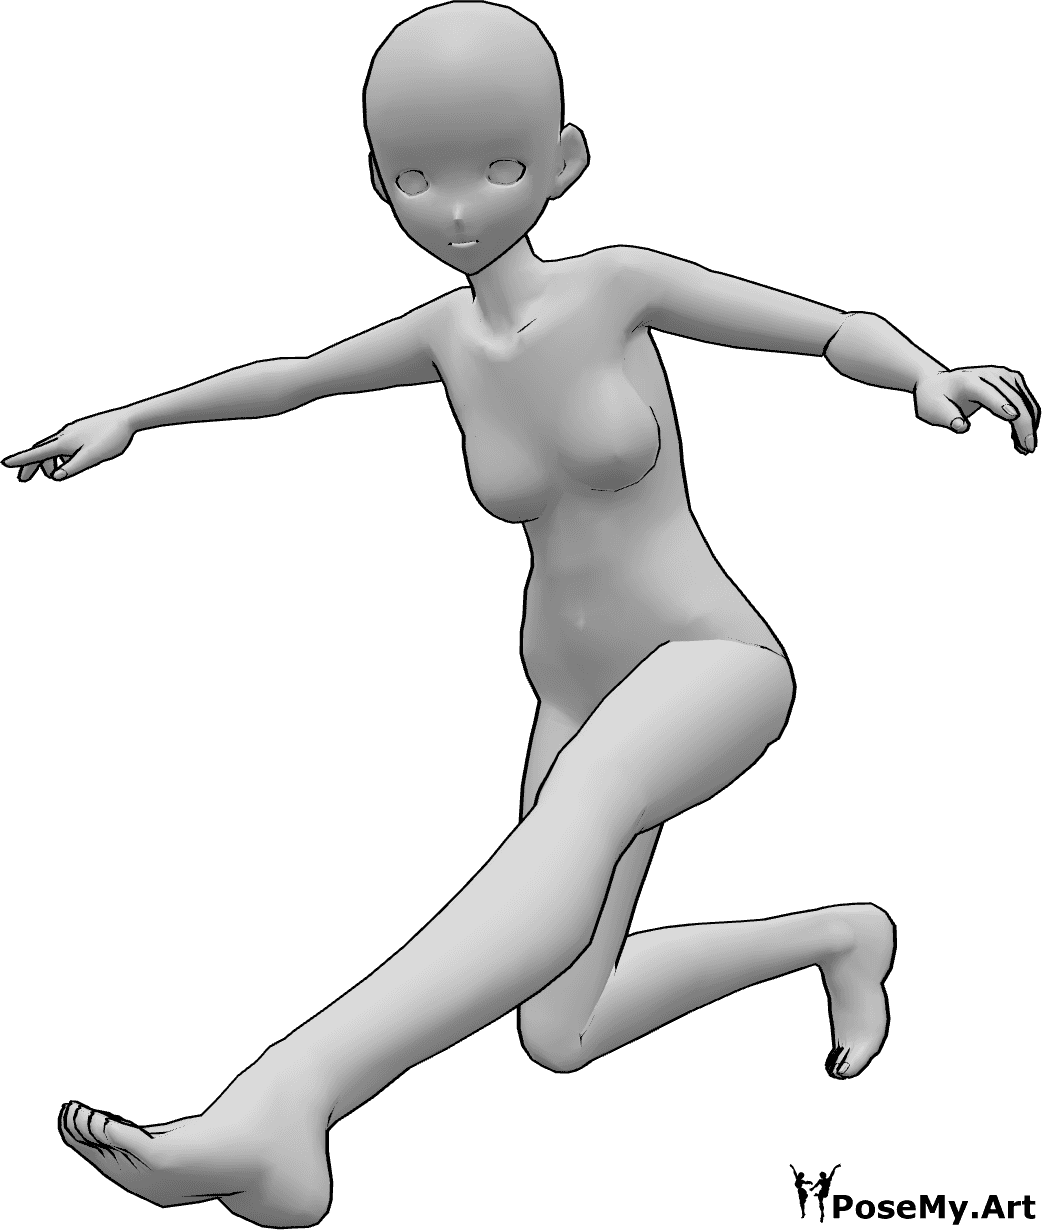 Posen-Referenz- Anime dynamische Landepose - Anime-Frau landet, balanciert mit den Händen und schaut nach vorne